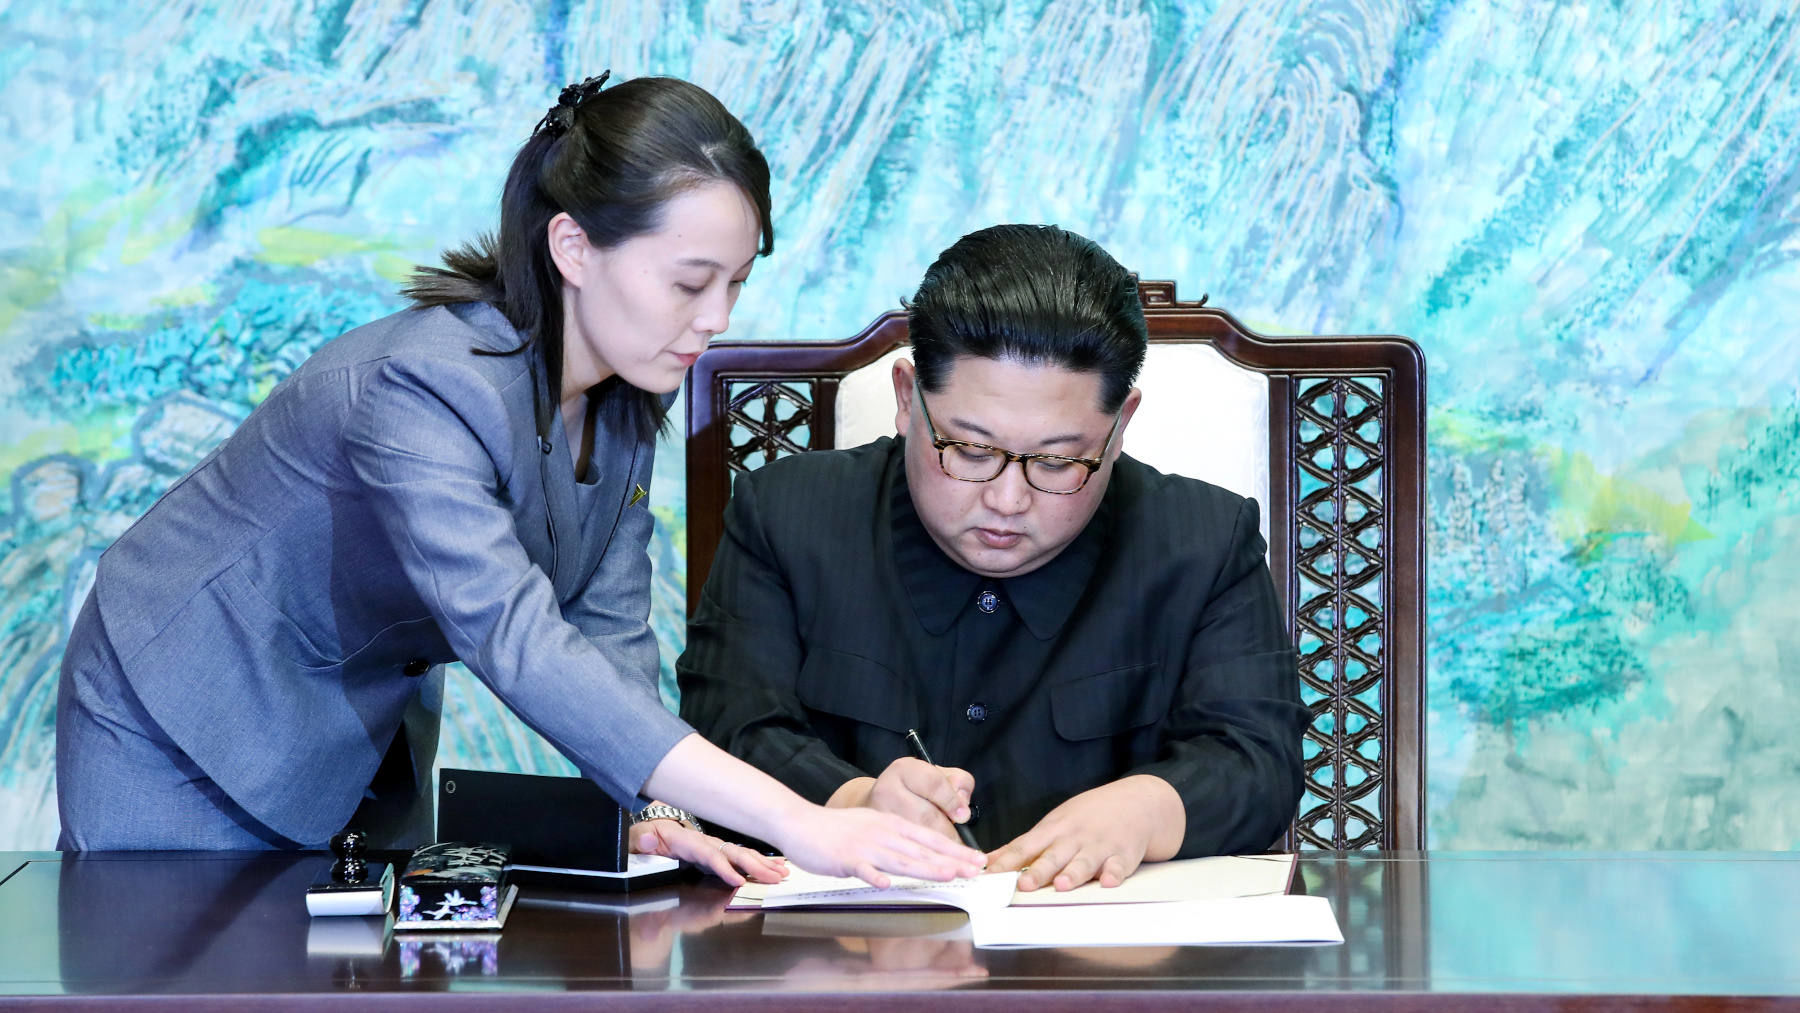 شجرنامه خانواده رهبر کره شمالی؛ اون چند خواهر، برادر، عمه و... دارد؟